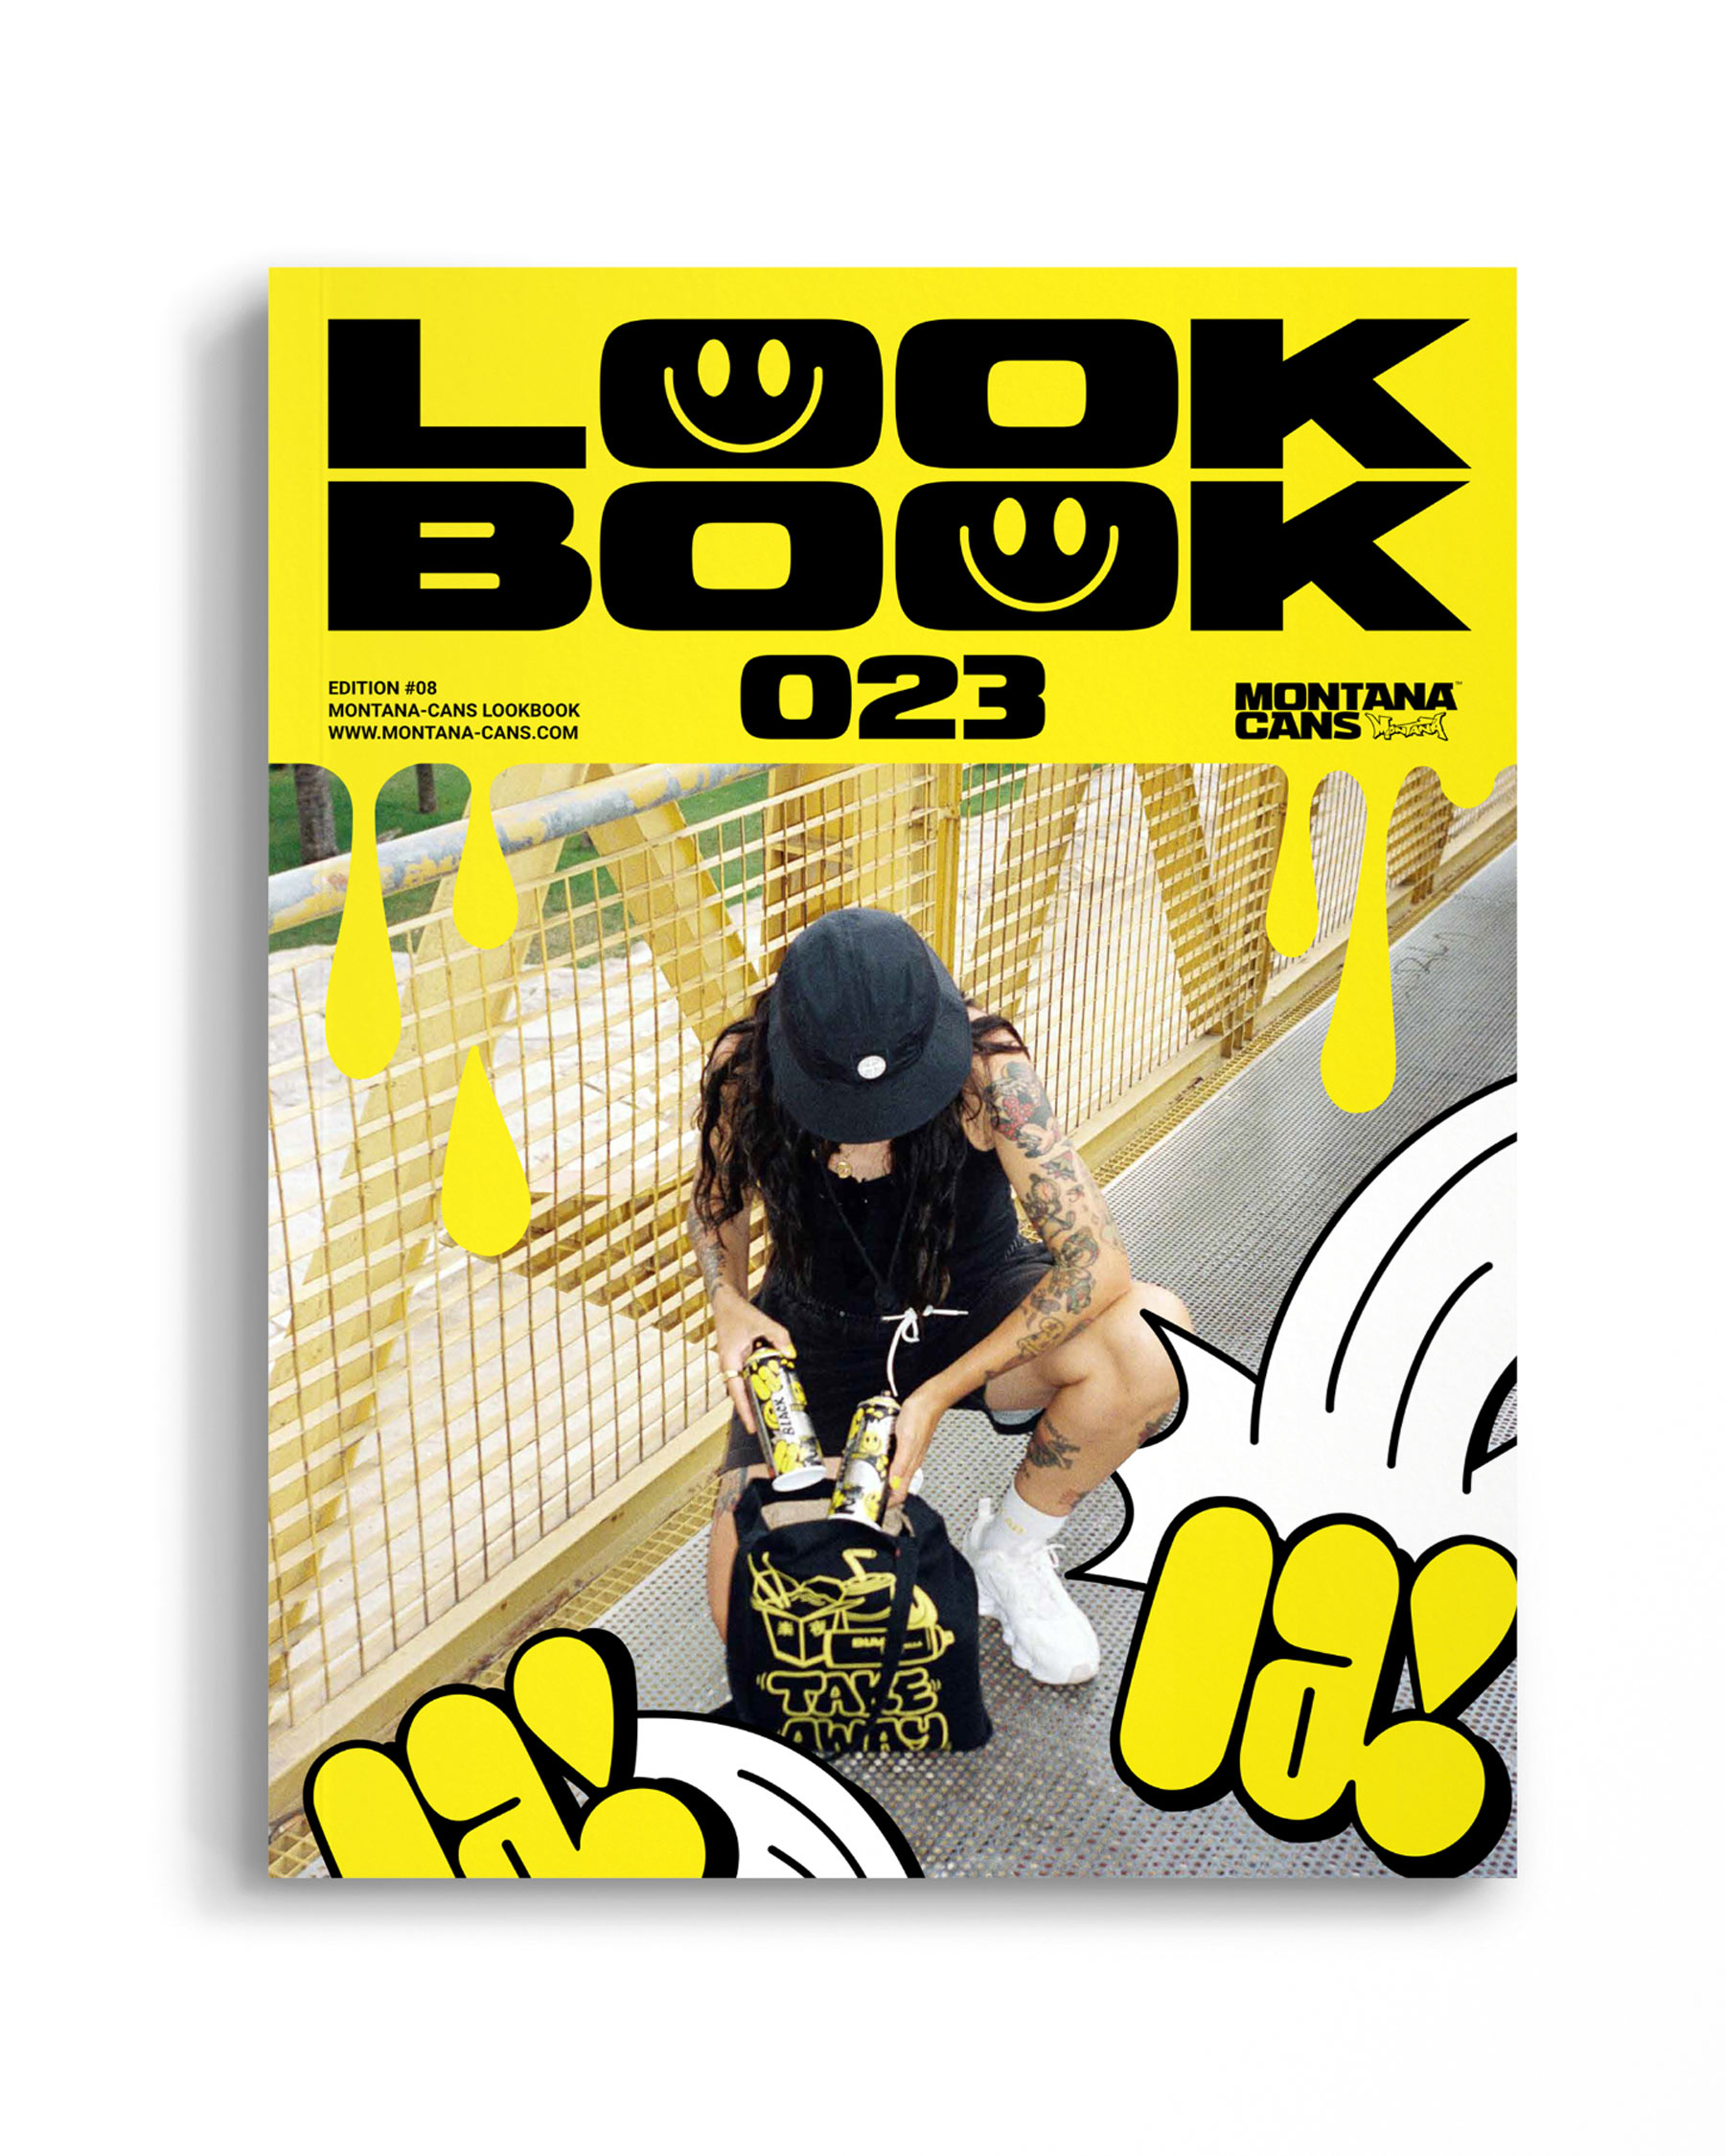 LOOKBOOK 2023